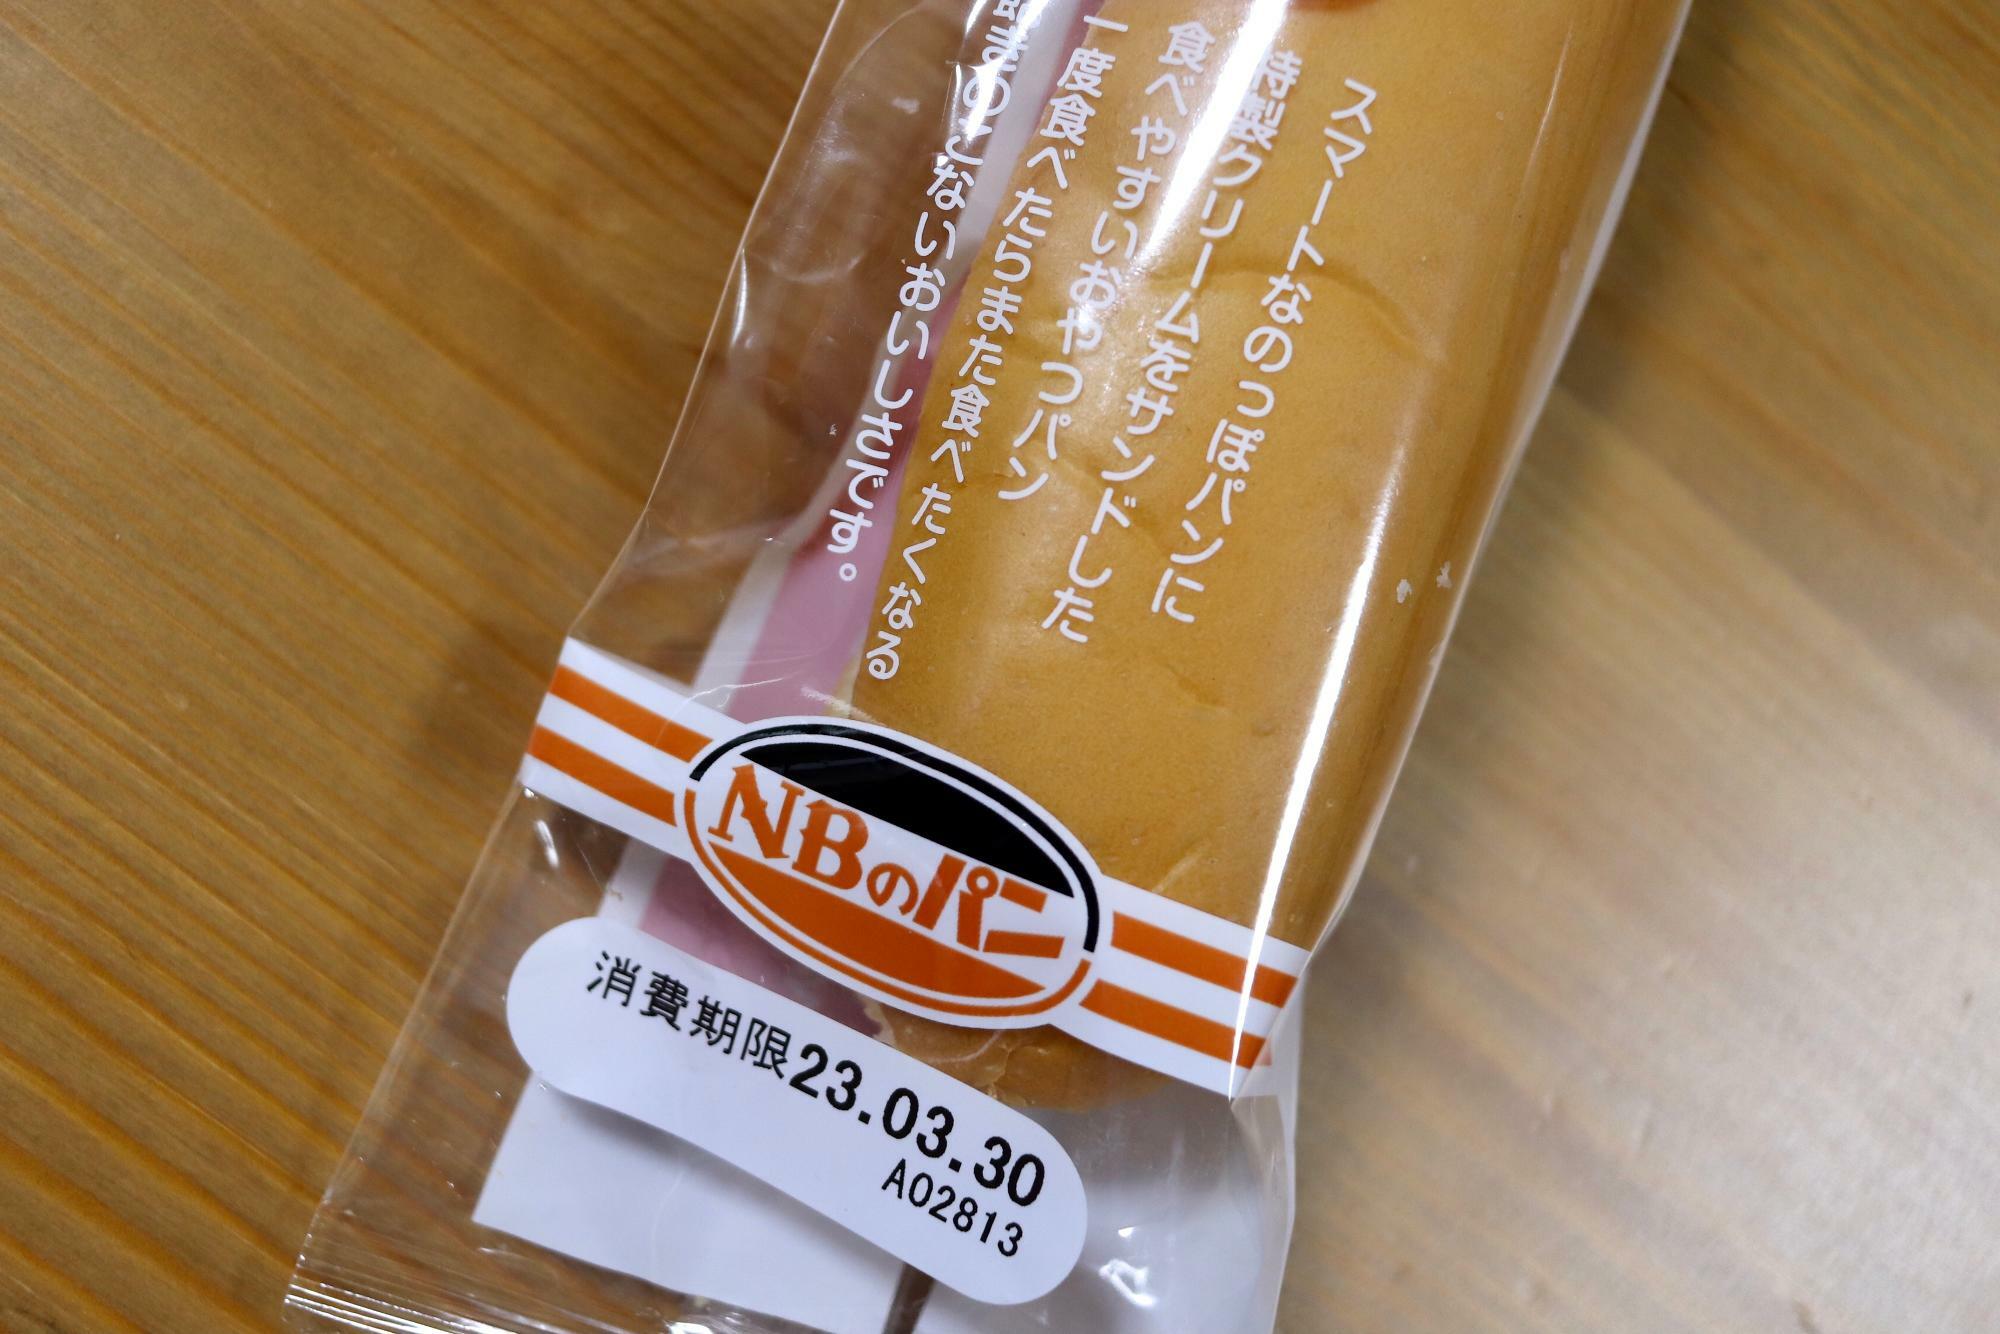 「NBのパン」のマークがなんとも趣深い